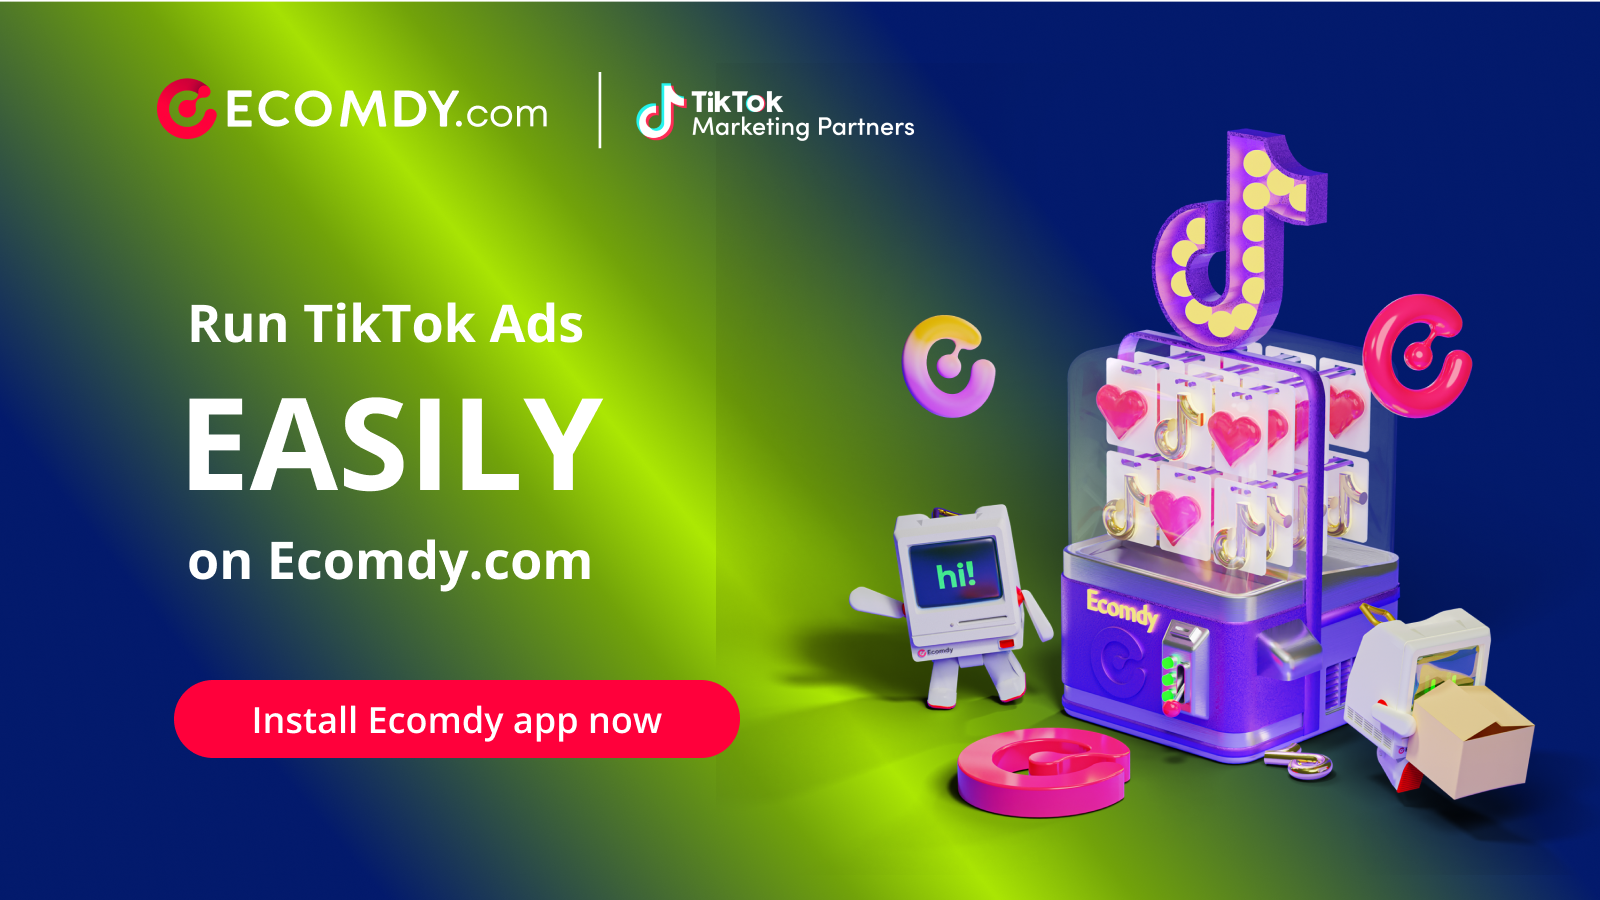 Voer TikTok-advertenties direct uit op Ecomdy.com